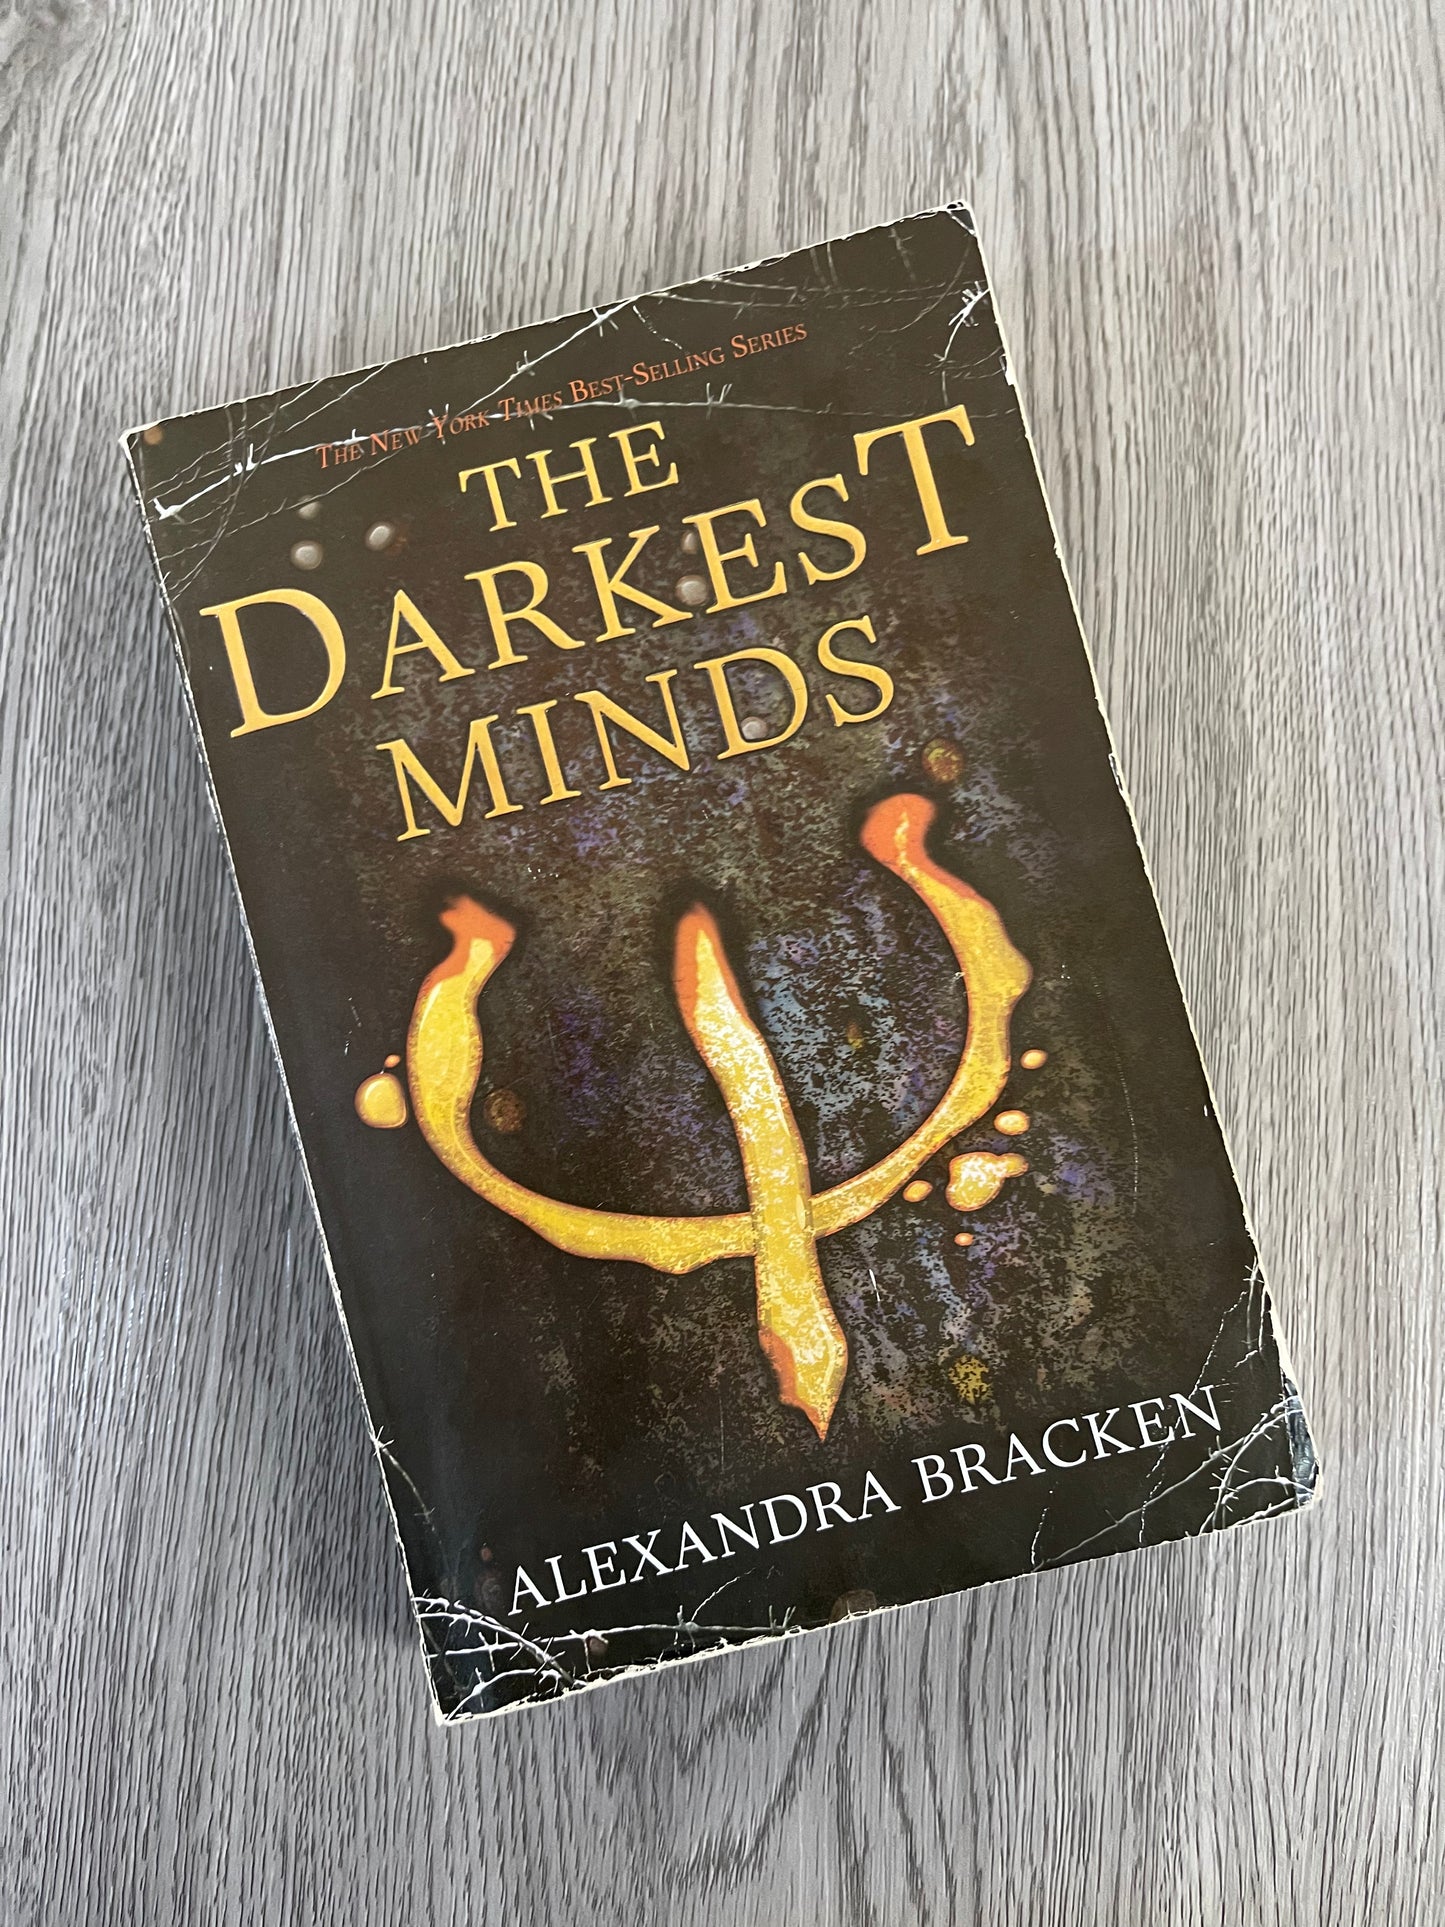 The Darkest Minds (Darkest Minds #1) by Alexandra Bracken